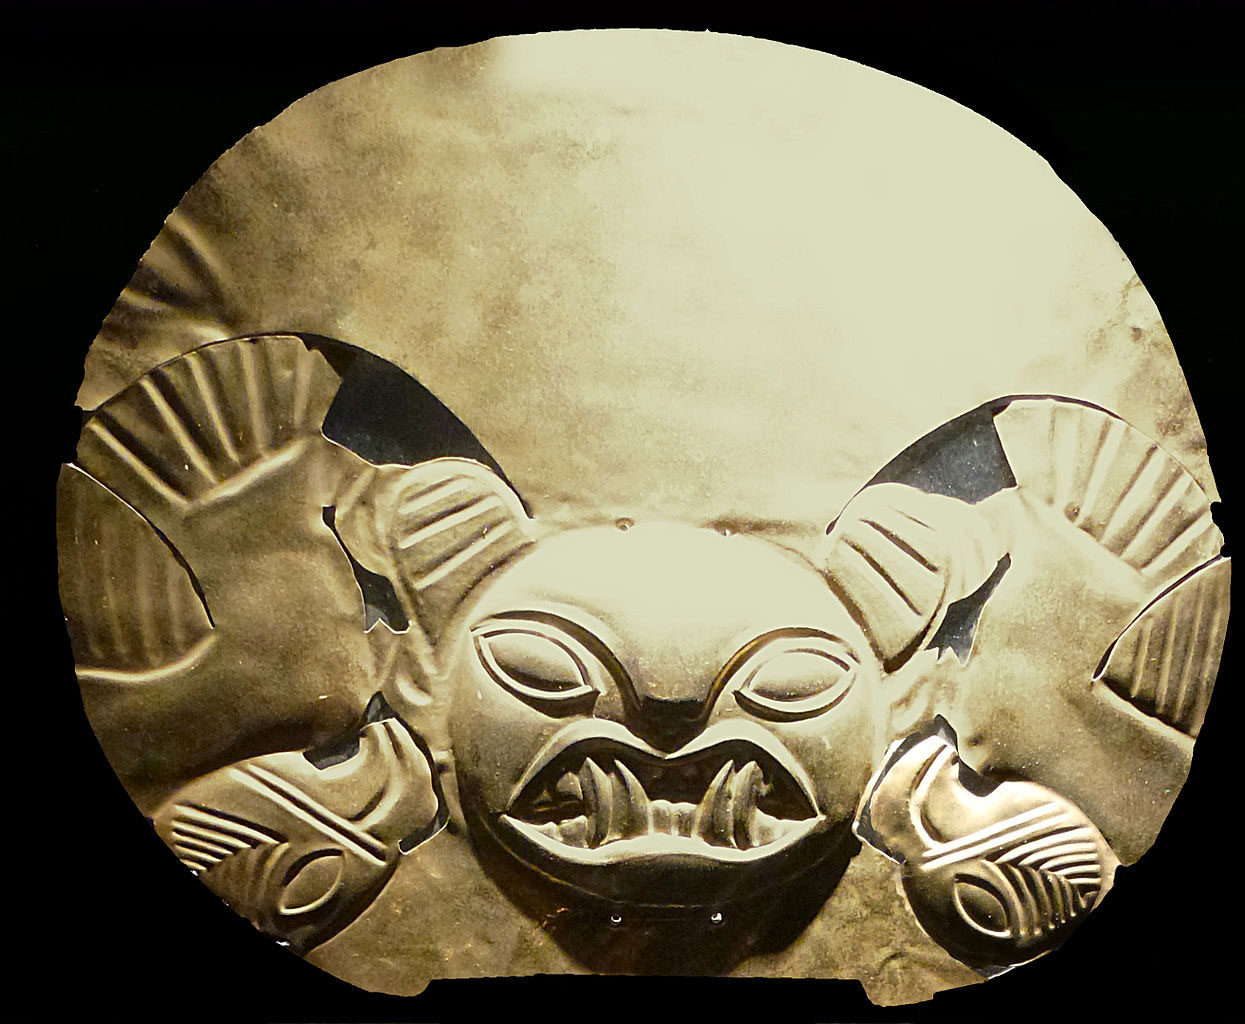 Coiffe mochica du Museo Arqueológico Rafael Larco Herrera de Lima, Pérou. Les Mochicas étaient des conquérants. Installés au nord-ouest de l'actuel Pérou à partir de 200 av. J.-C., ils occupaient un territoire sur une bande côtière longue de plus de 600 km. Ils étaient aussi de brillants orfèvres et furent capables de cultiver des sols arides, grâce à un ingénieux système d’irrigation dont s'inspirèrent les Incas.